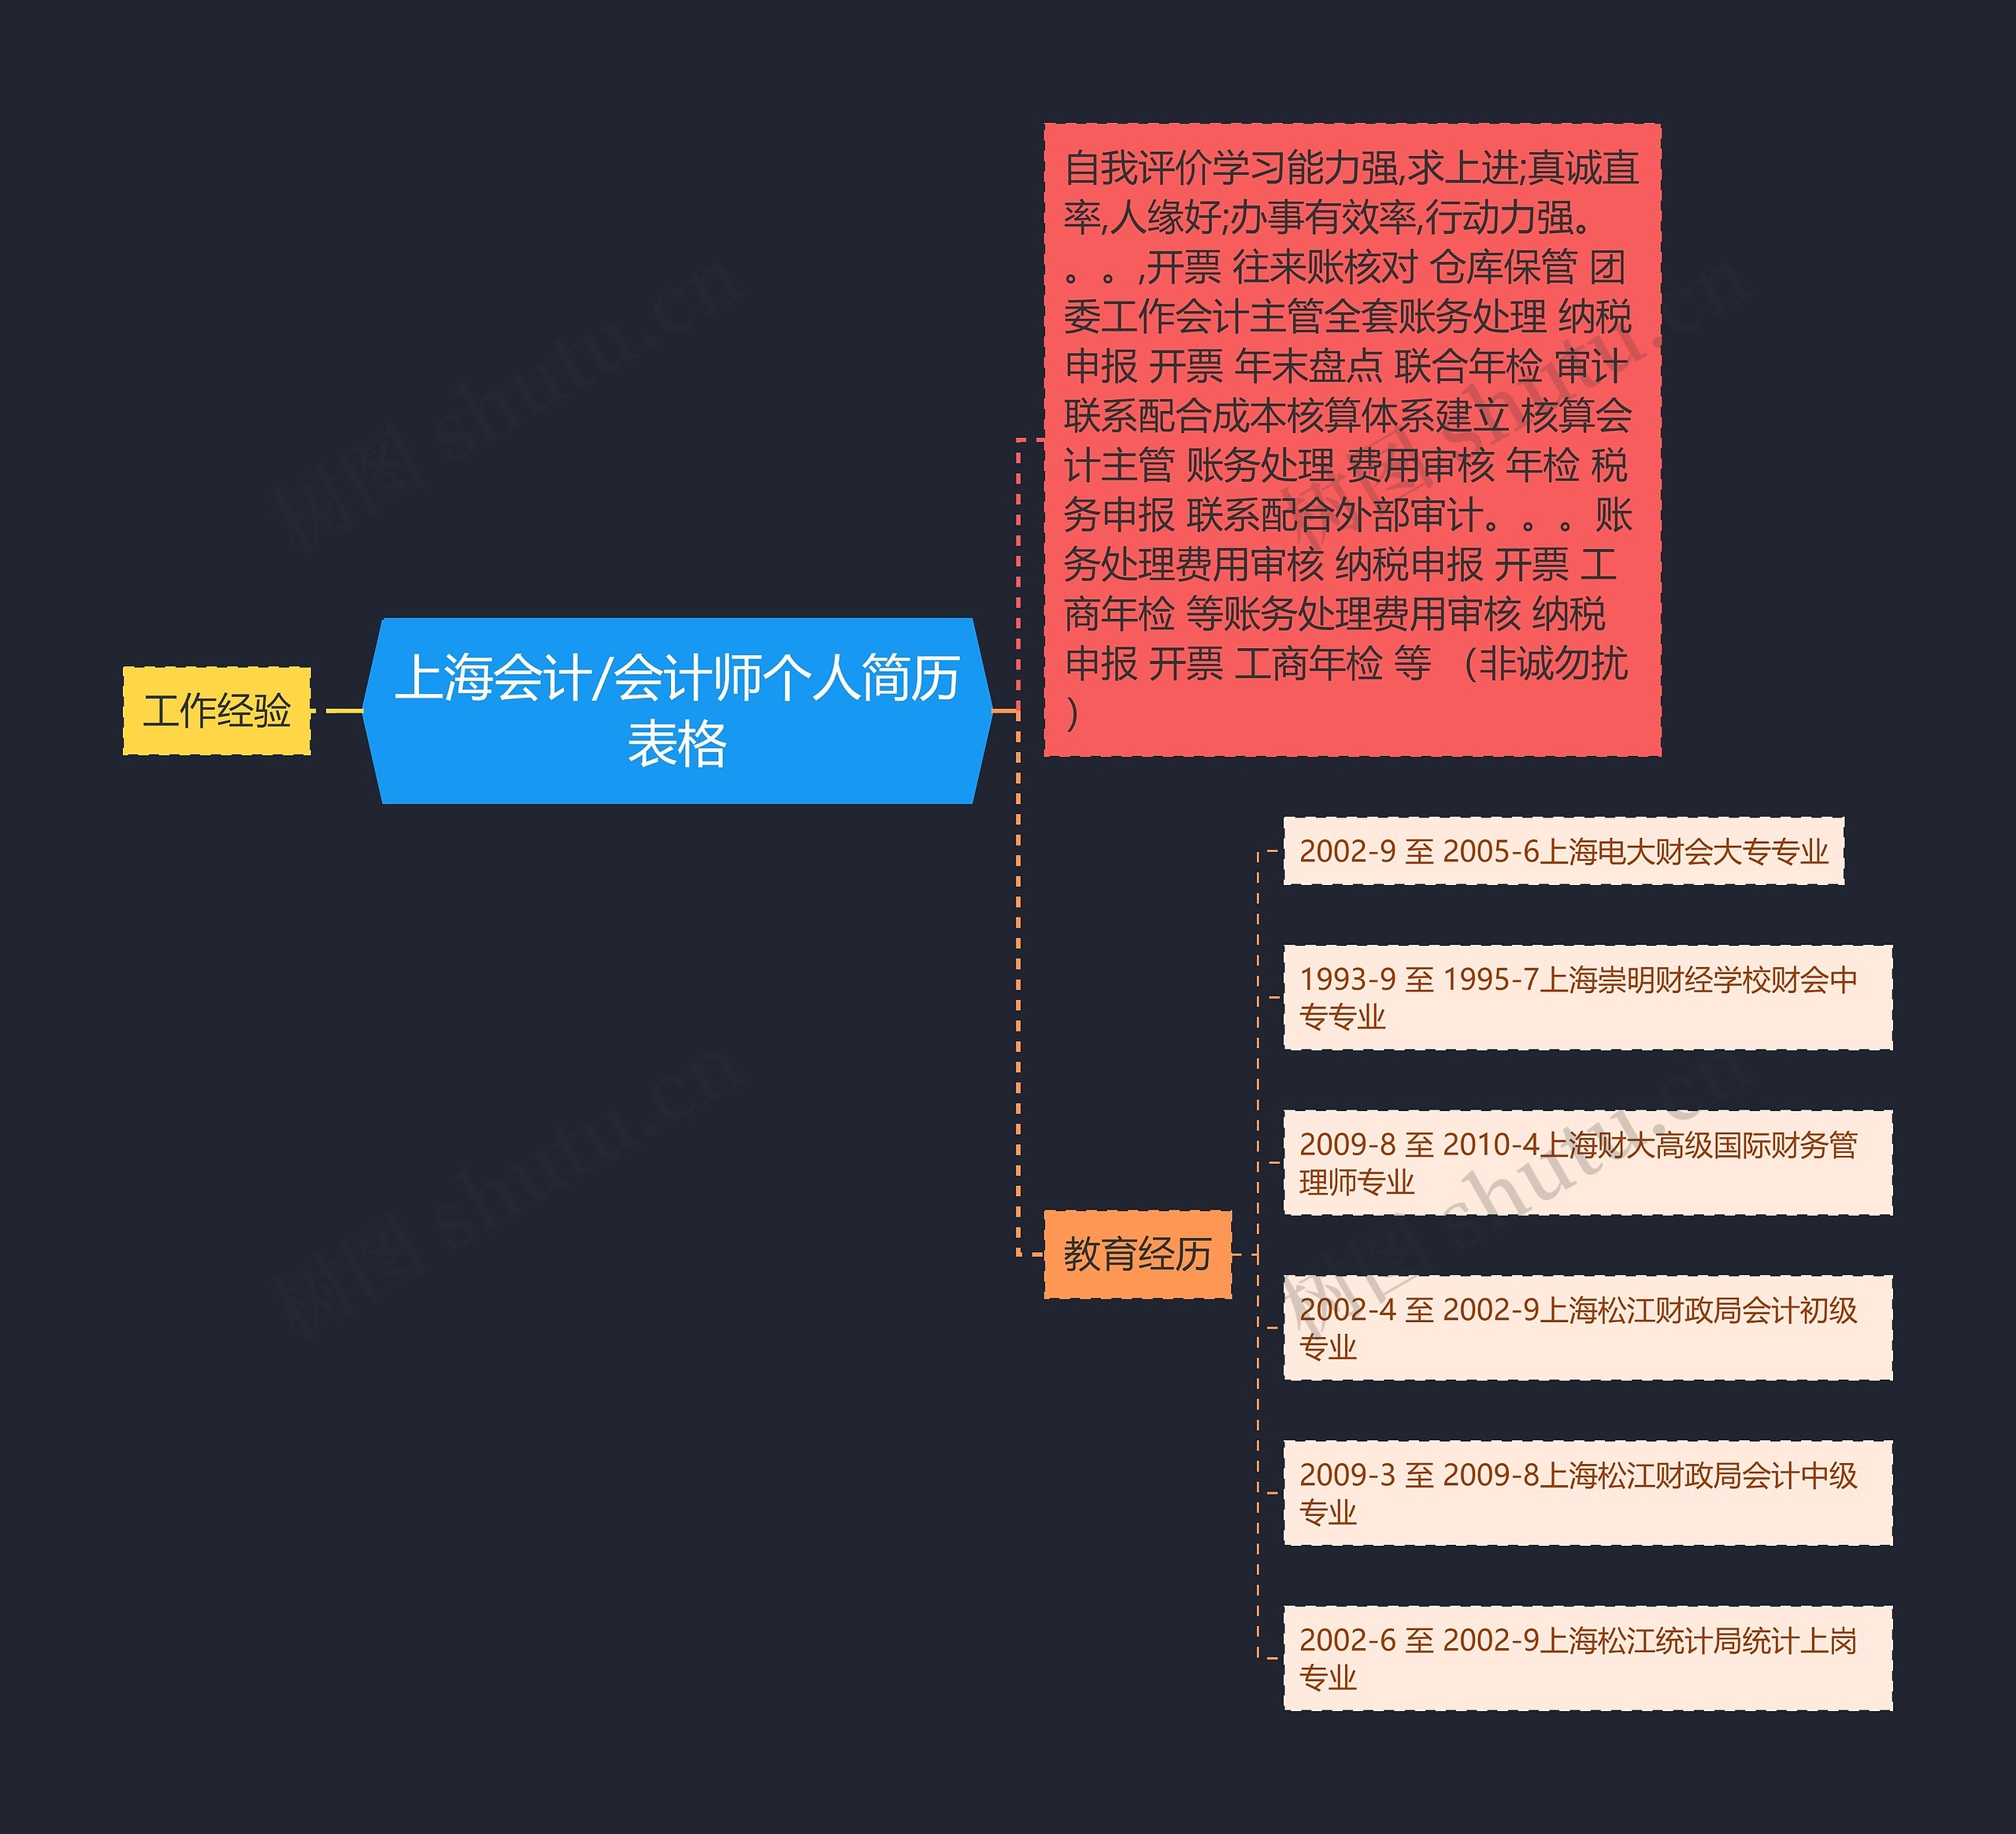 上海会计/会计师个人简历表格思维导图